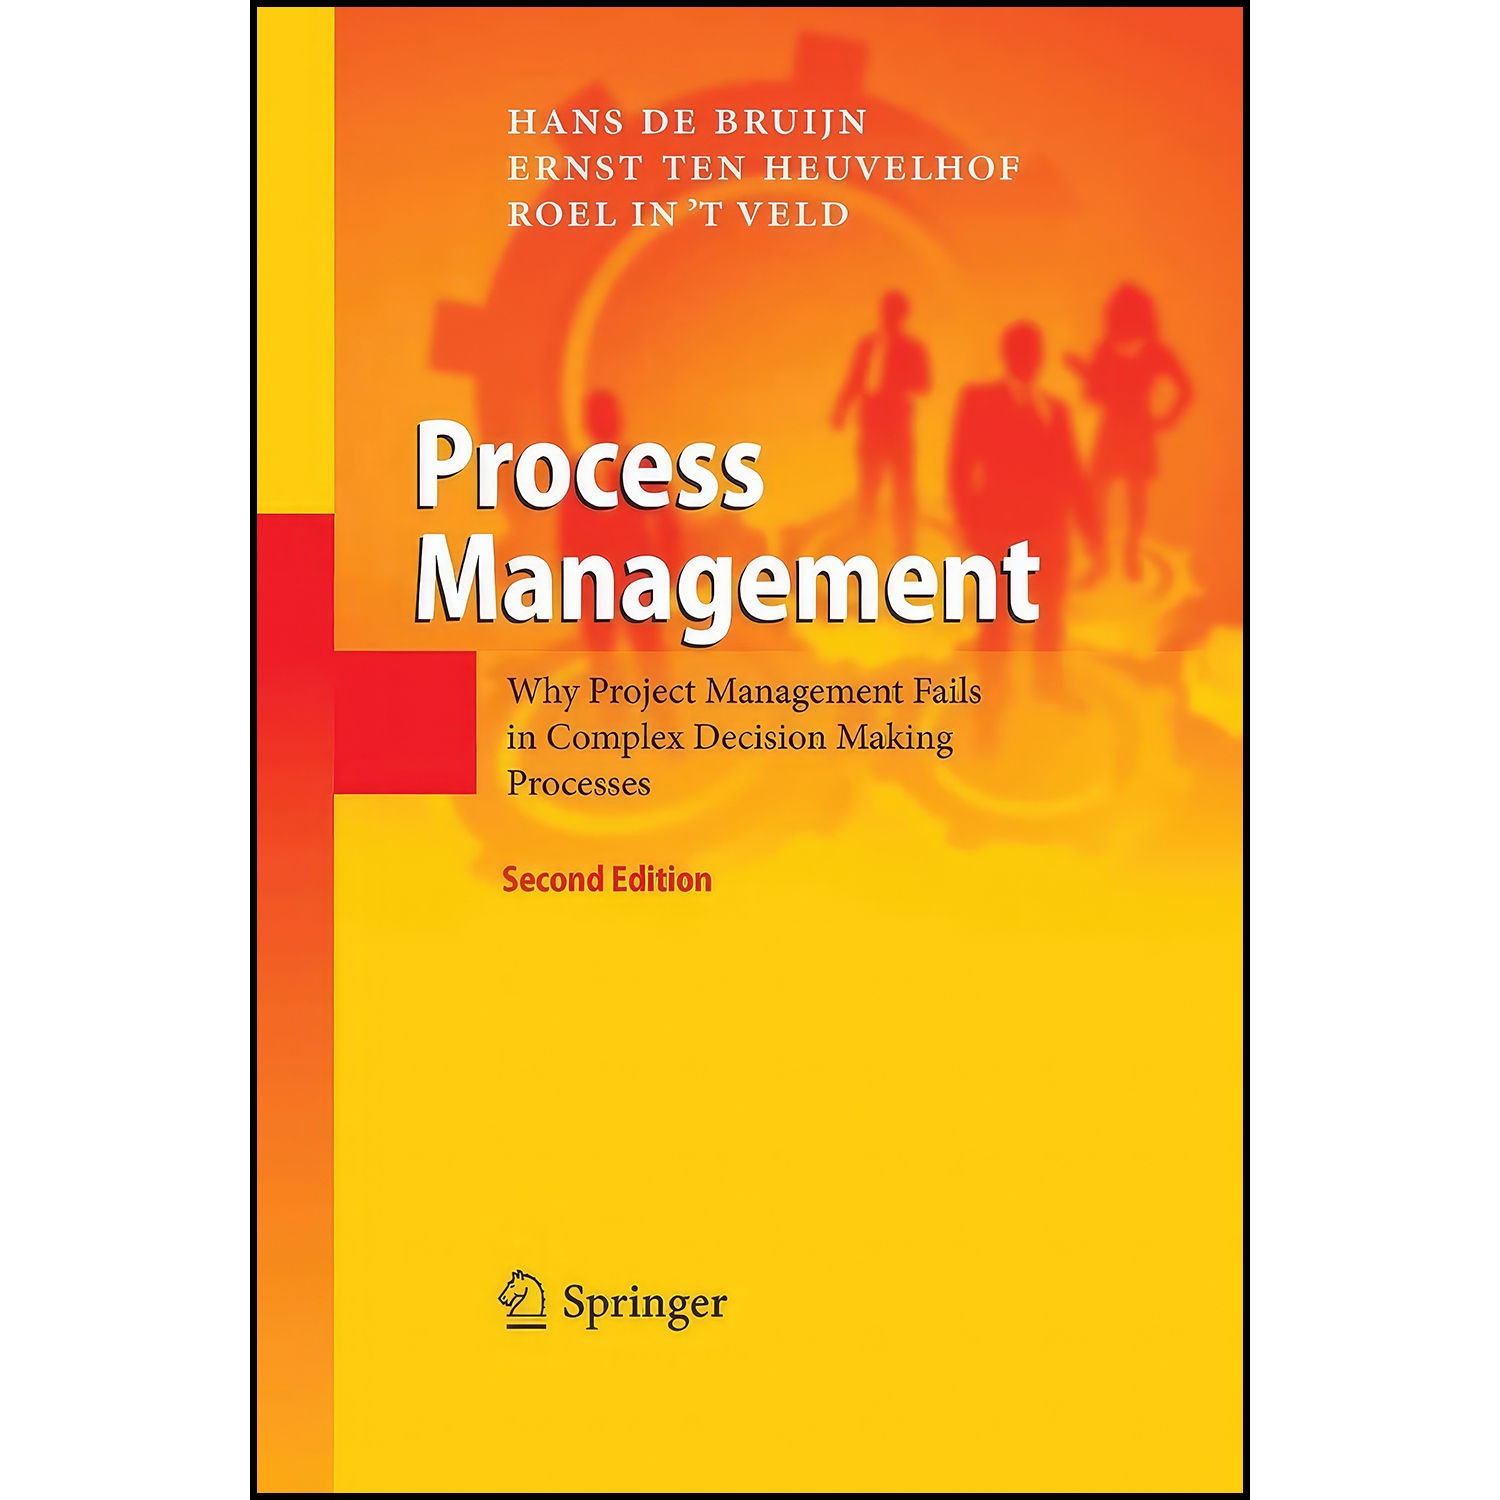 کتاب Process Management اثر جمعي از نويسندگان انتشارات بله